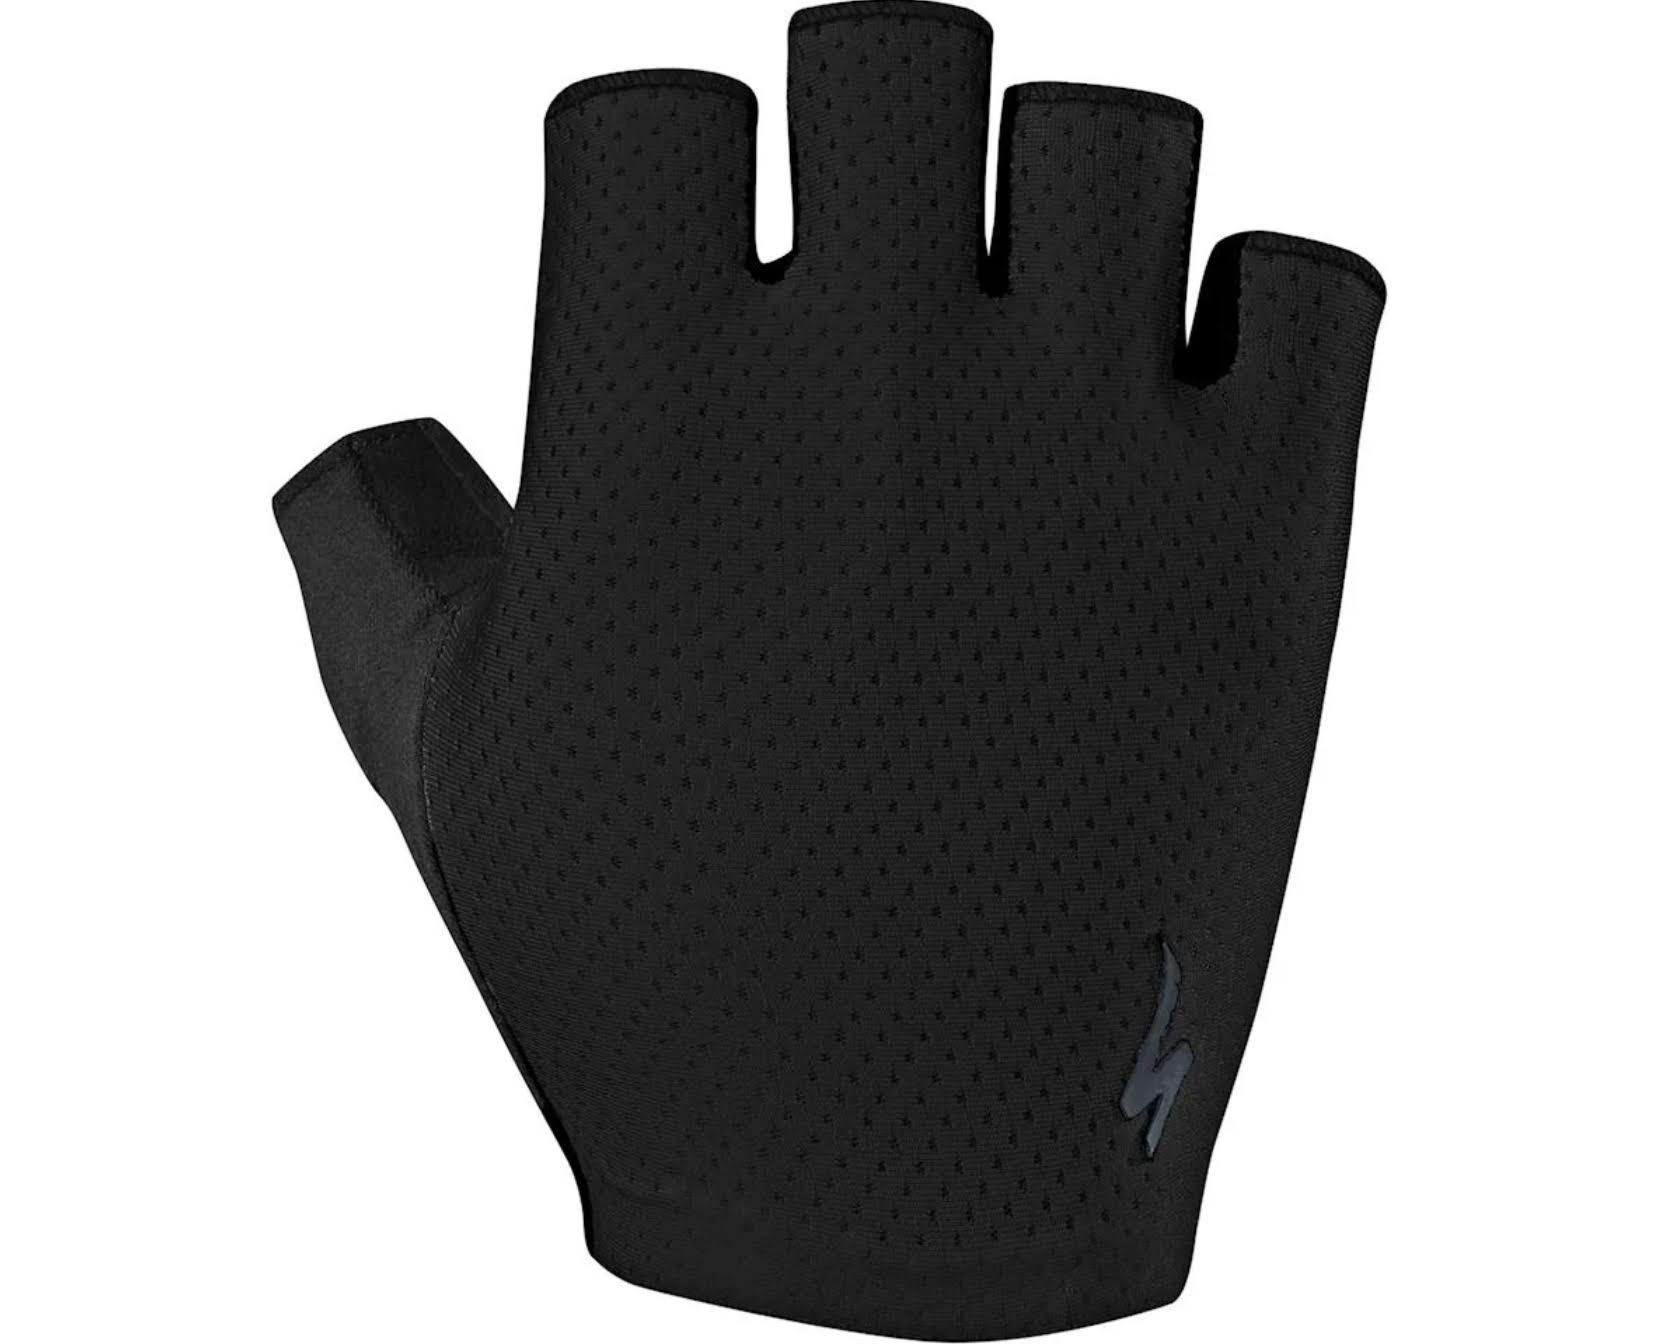 Specialized BG Grail Gloves - Black - Medium